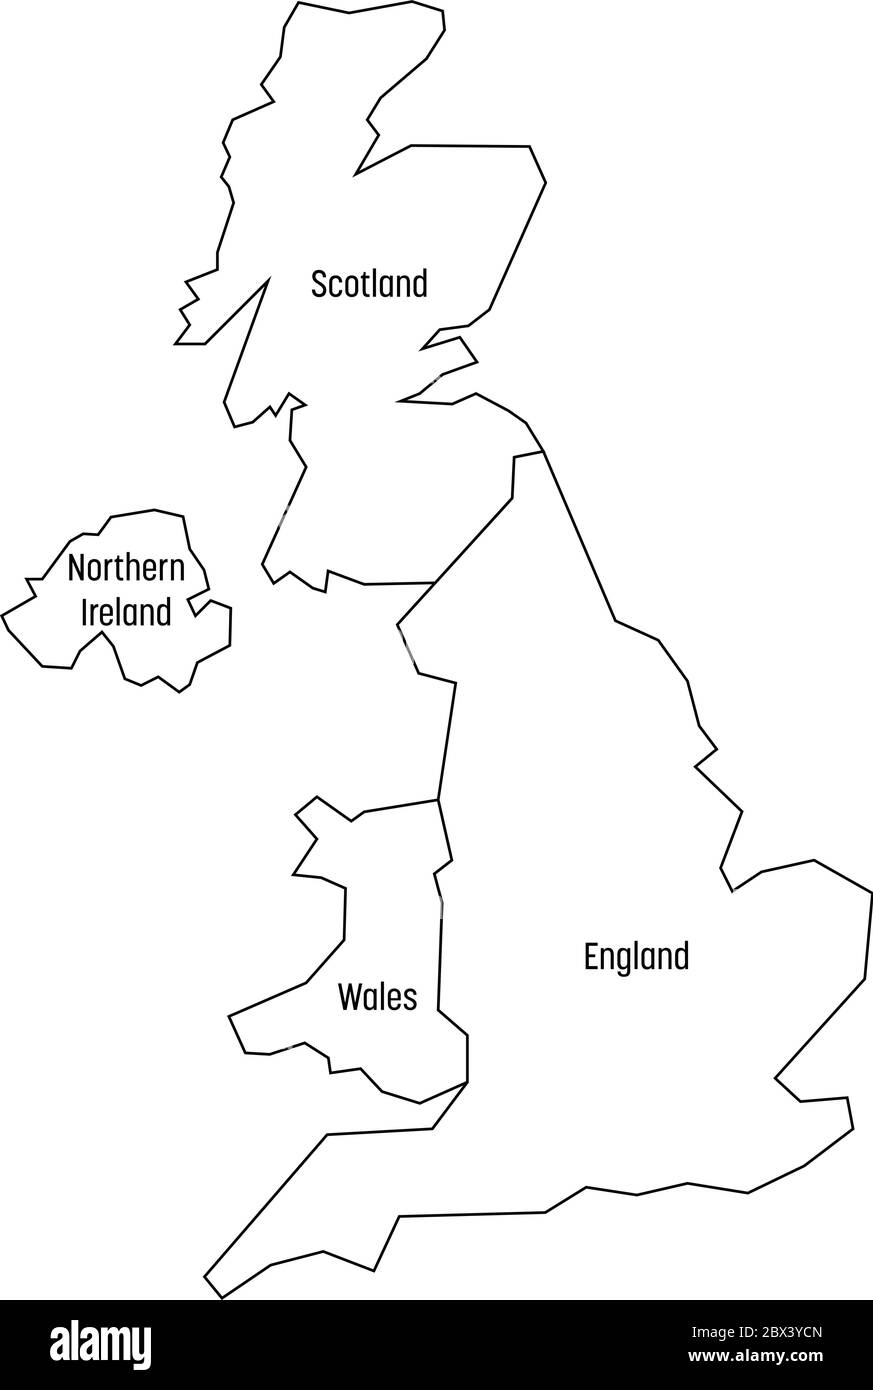 Carte des pays du Royaume-Uni - Angleterre, pays de Galles, Écosse et Irlande du Nord. Carte de contour simple à vecteur plat avec étiquettes. Illustration de Vecteur